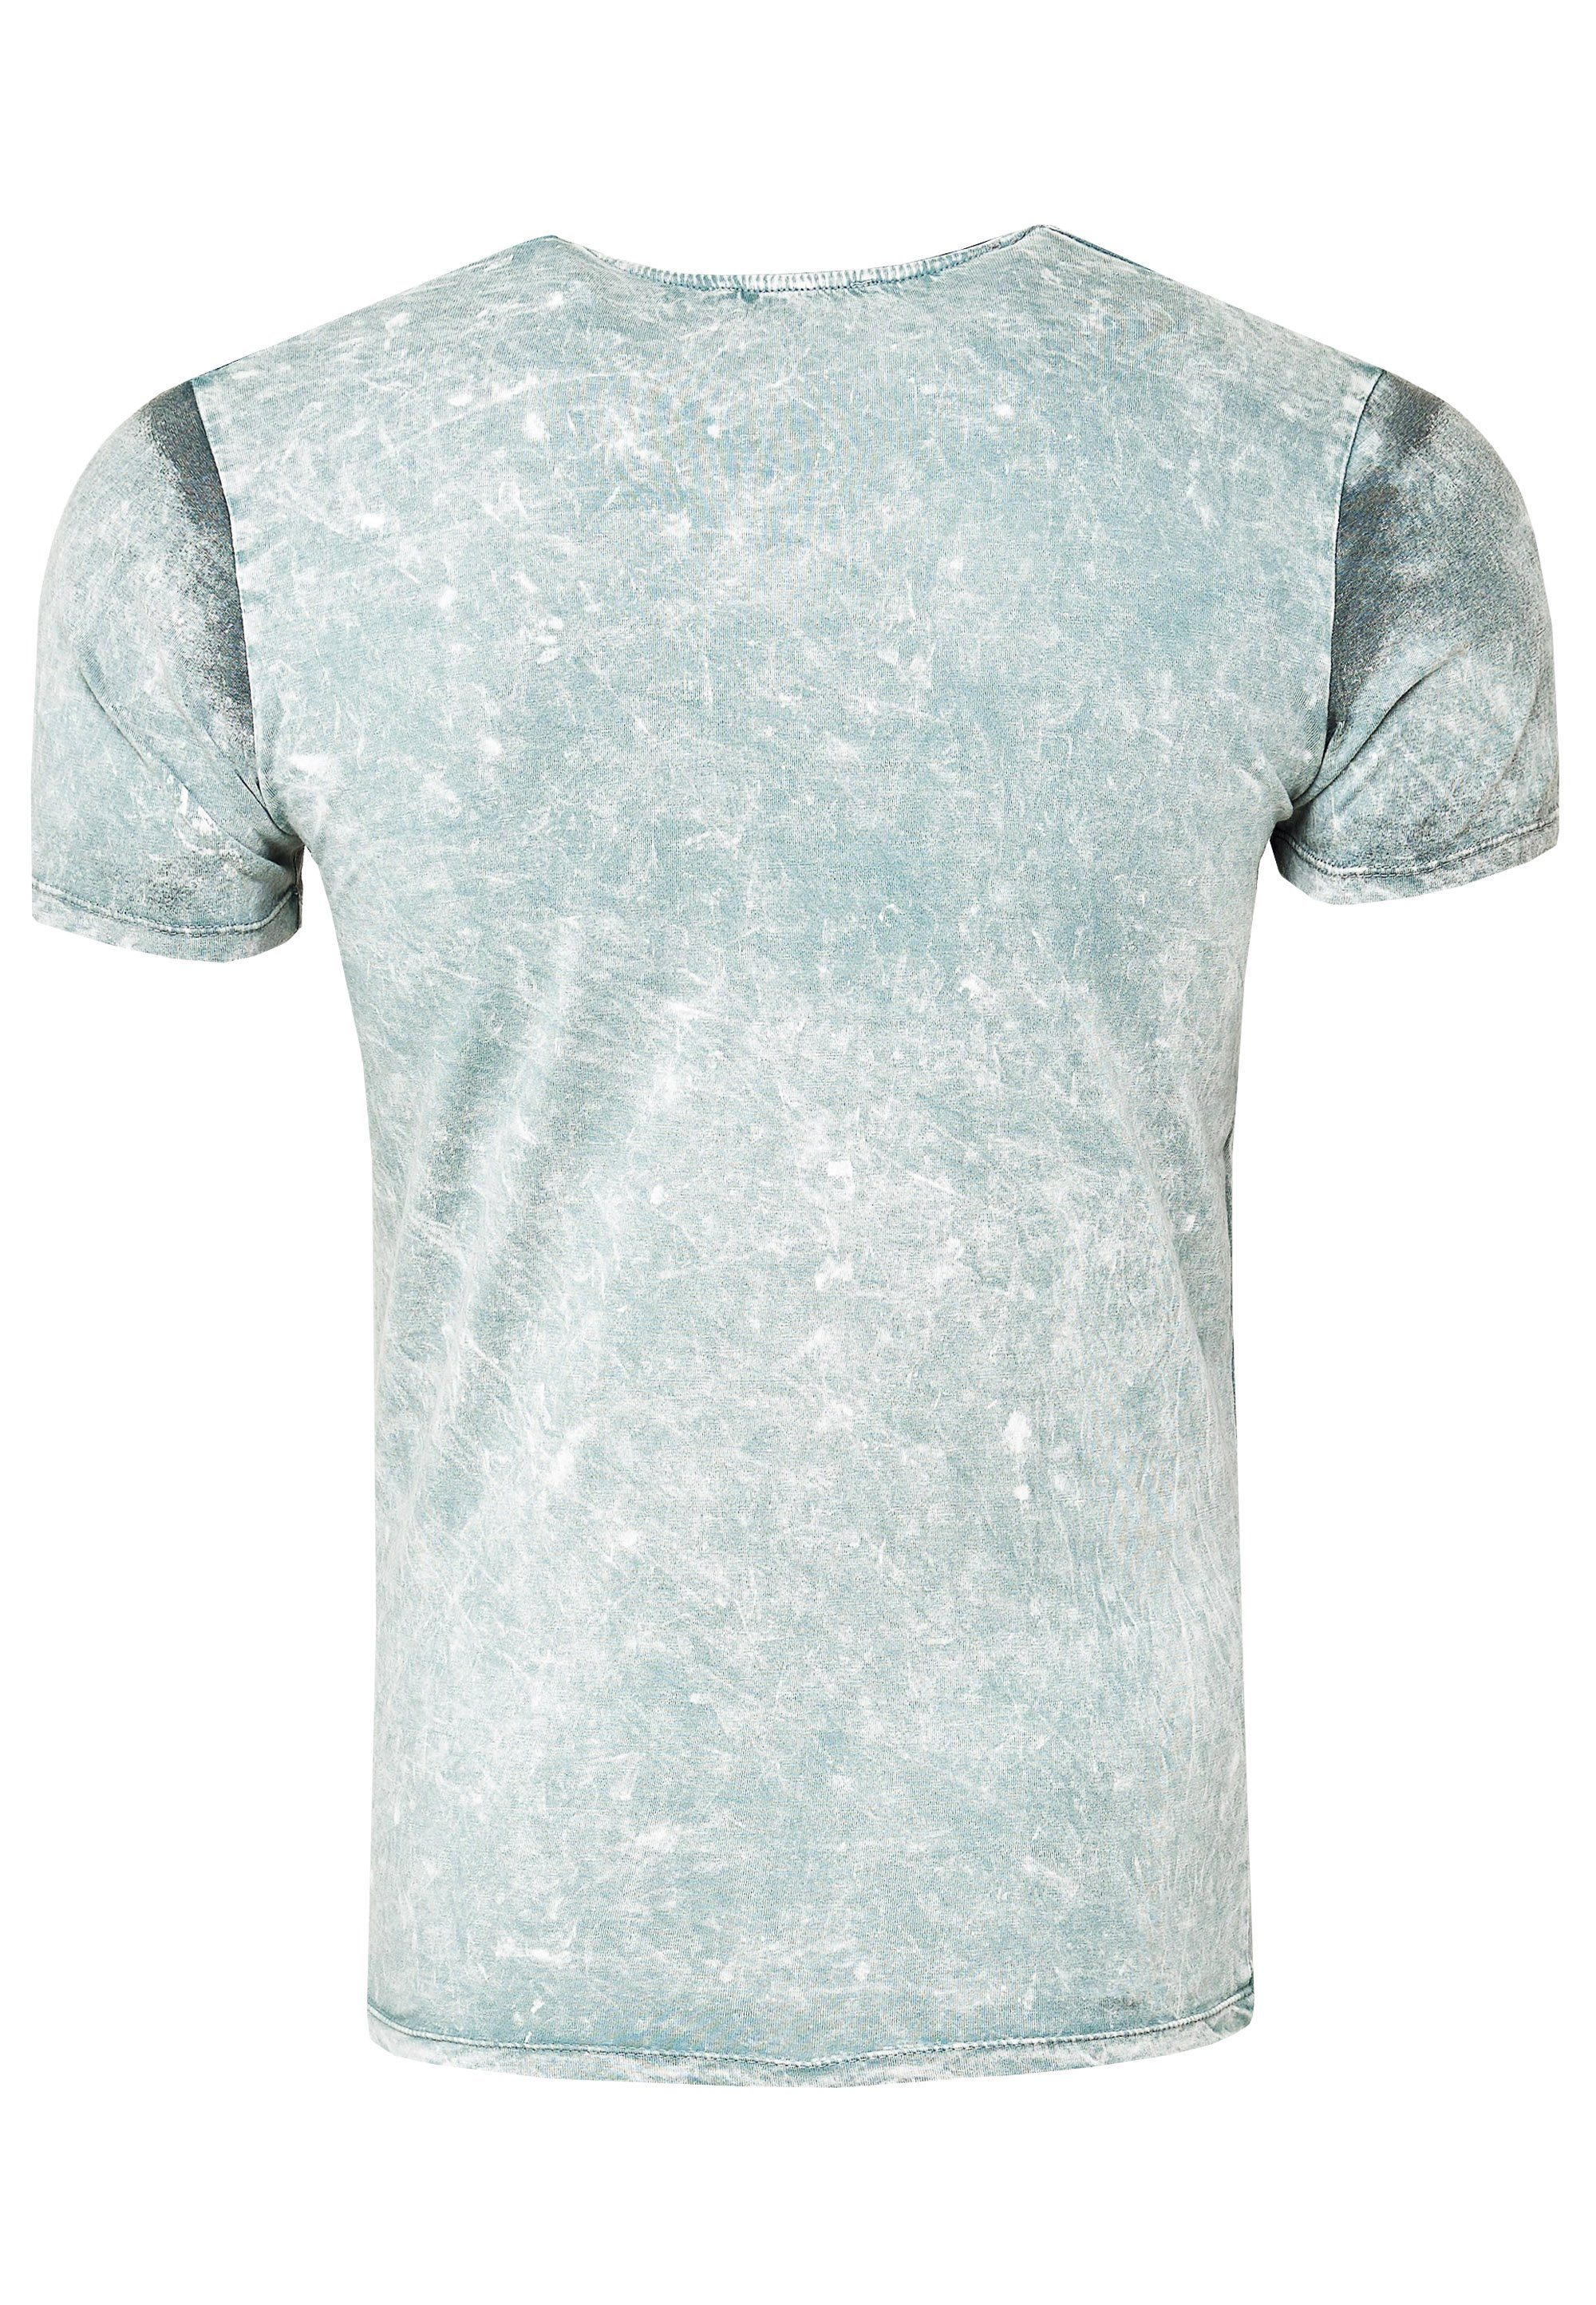 Rusty Neal T-Shirt grau mit Print eindrucksvollem